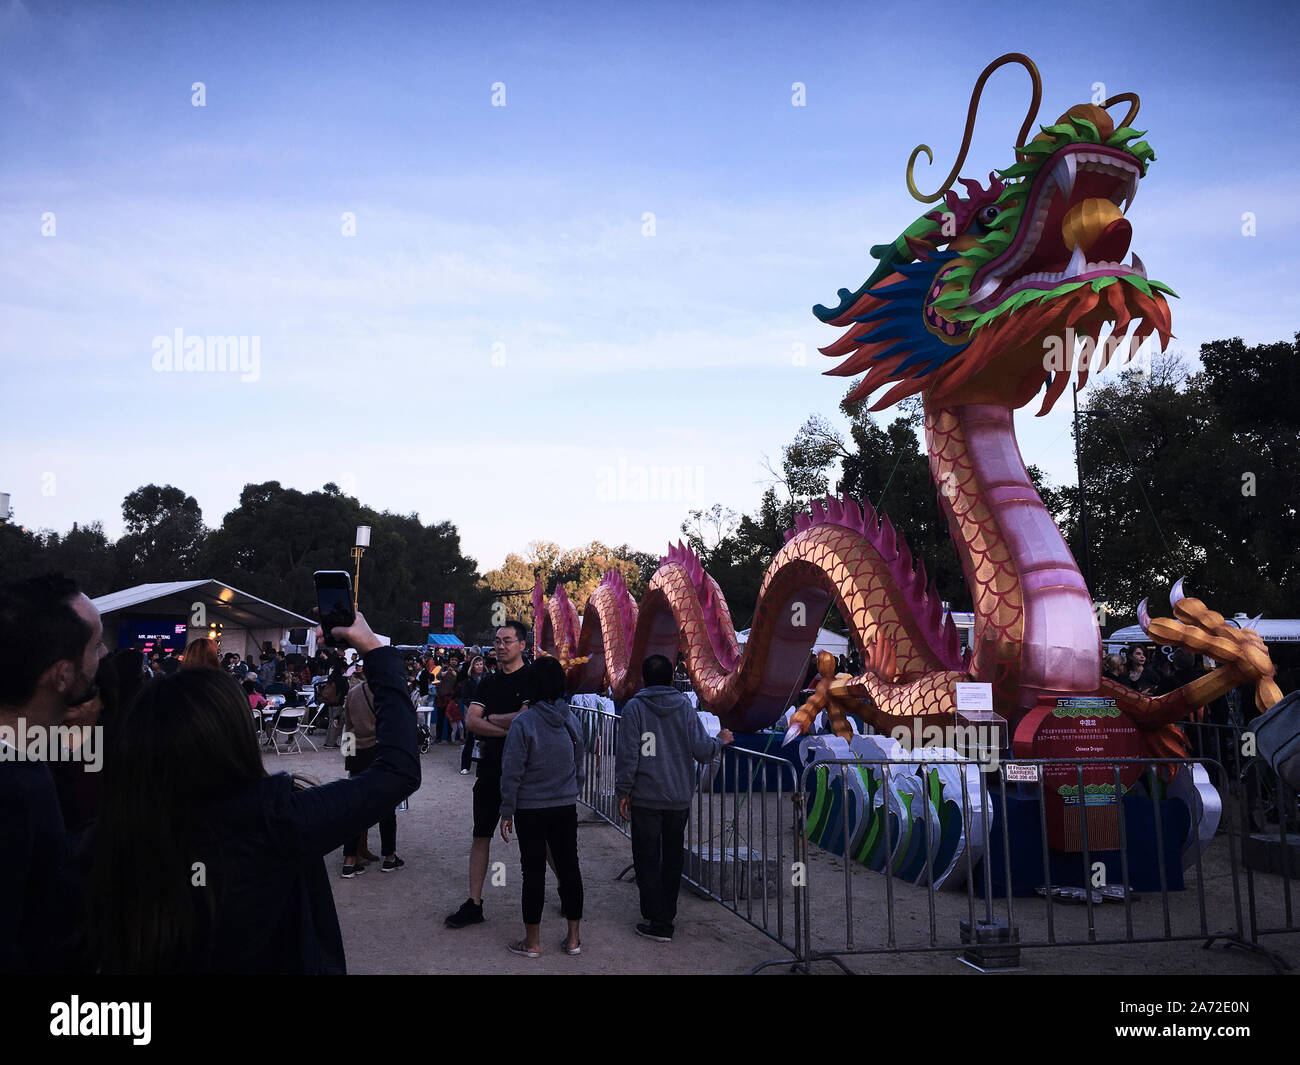 La linterna del Dragón Eterno 27m de largo x 6m de alto. El festival Light Up Melbourne rinde homenaje al festival chino Lantern Foto de stock